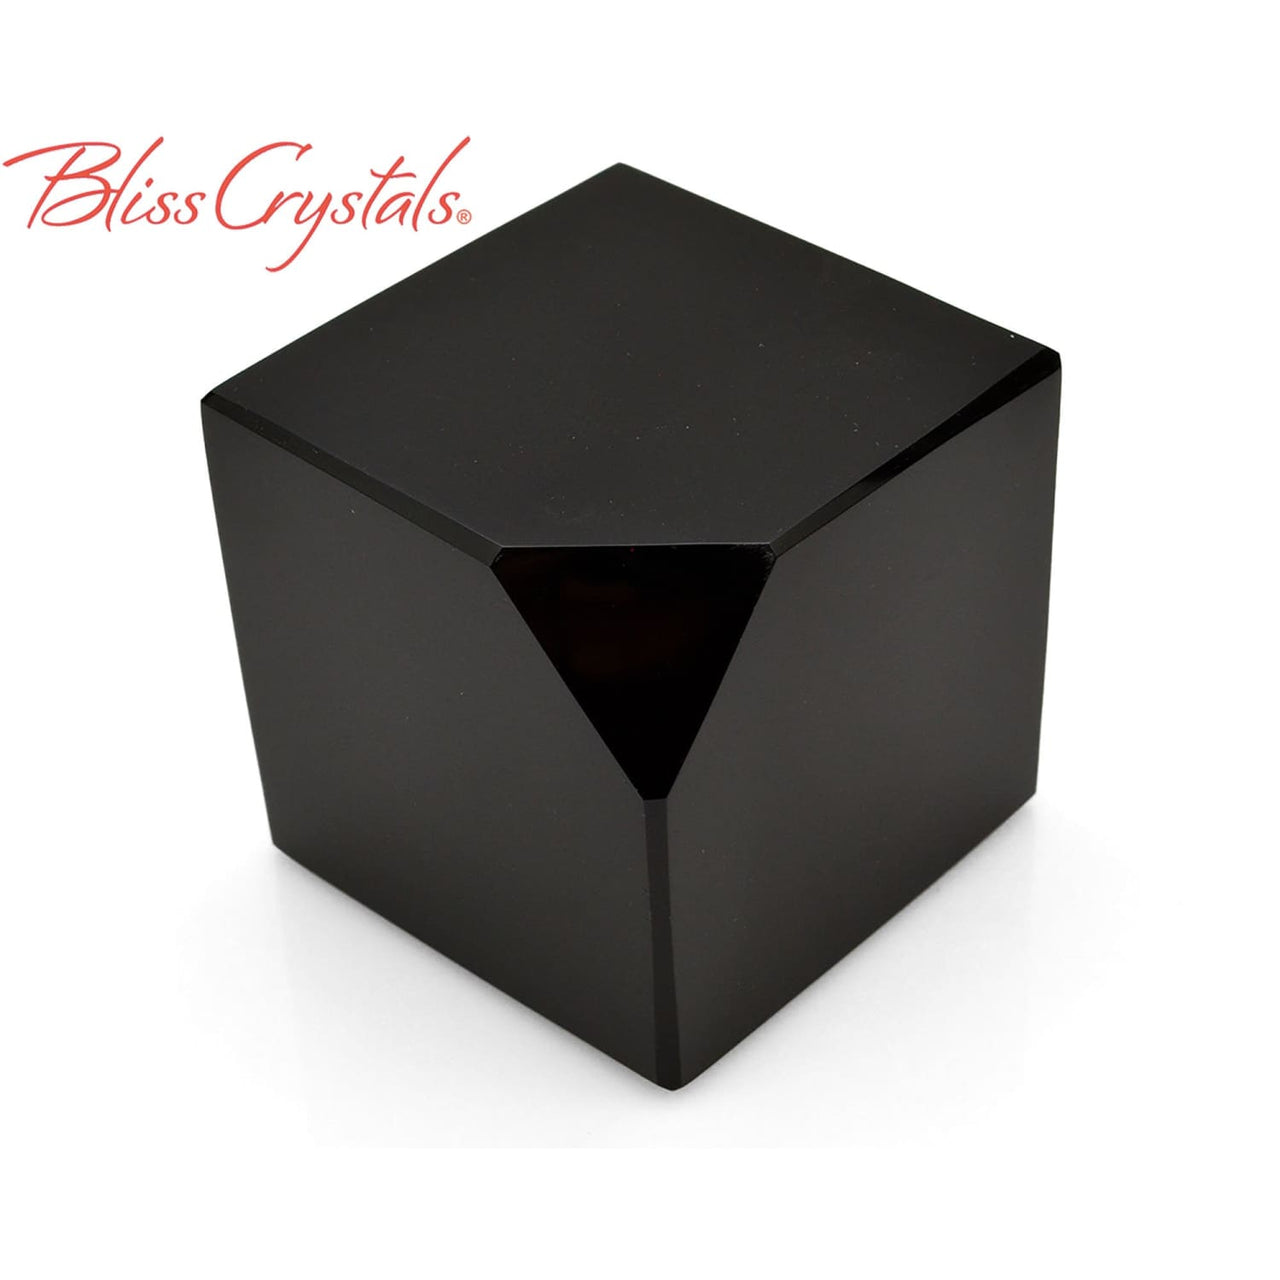 2 BLACK OBSIDIAN Cube Cut Polished Altar Stone #BM12